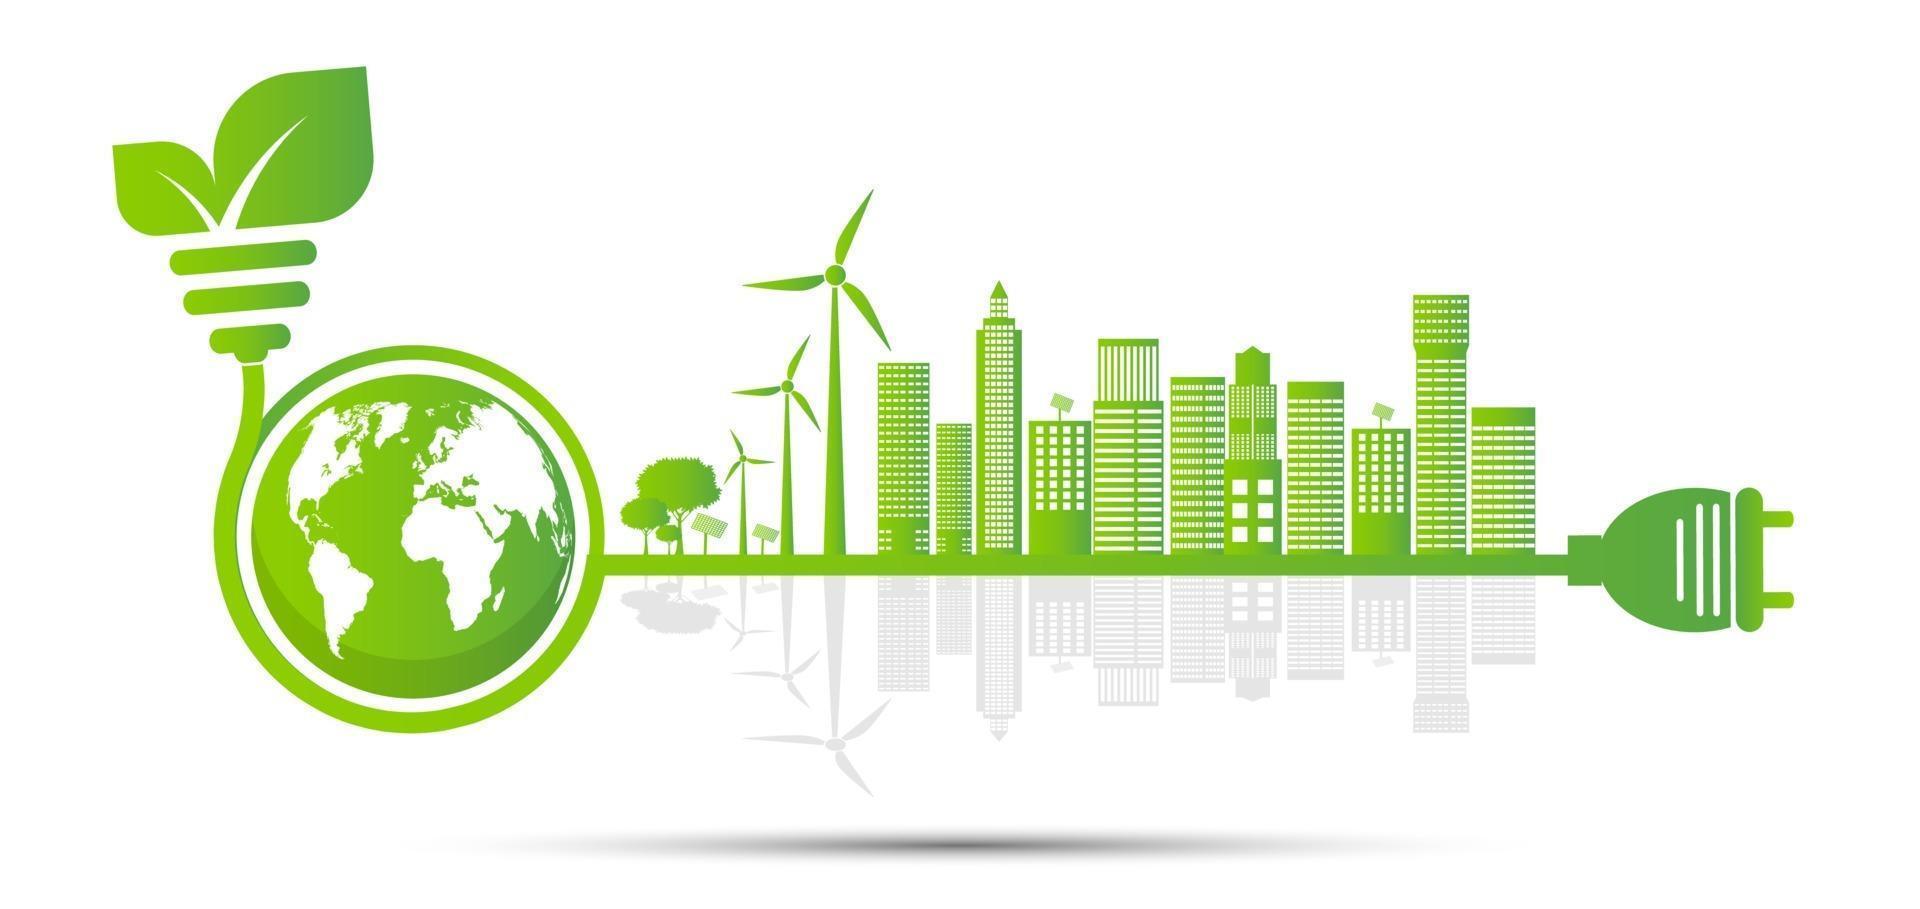 La ecología y el concepto ambiental símbolo de la tierra con hojas verdes alrededor de las ciudades ayudan al mundo con ideas ecológicas vector